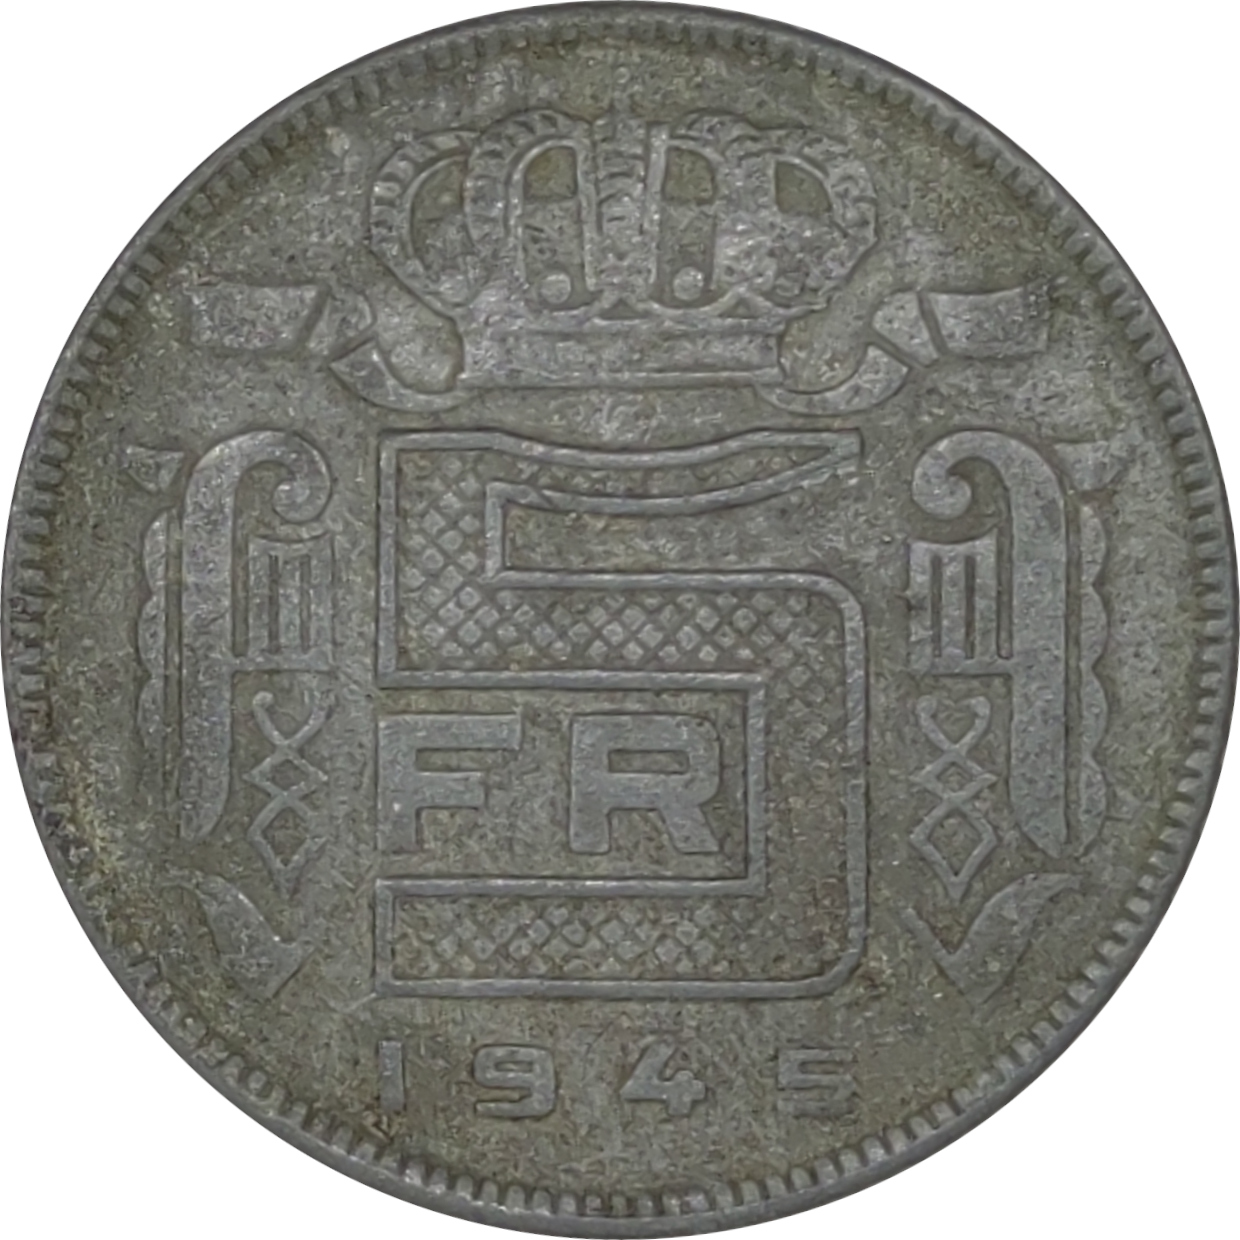 5 francs - Leopold III - Rau